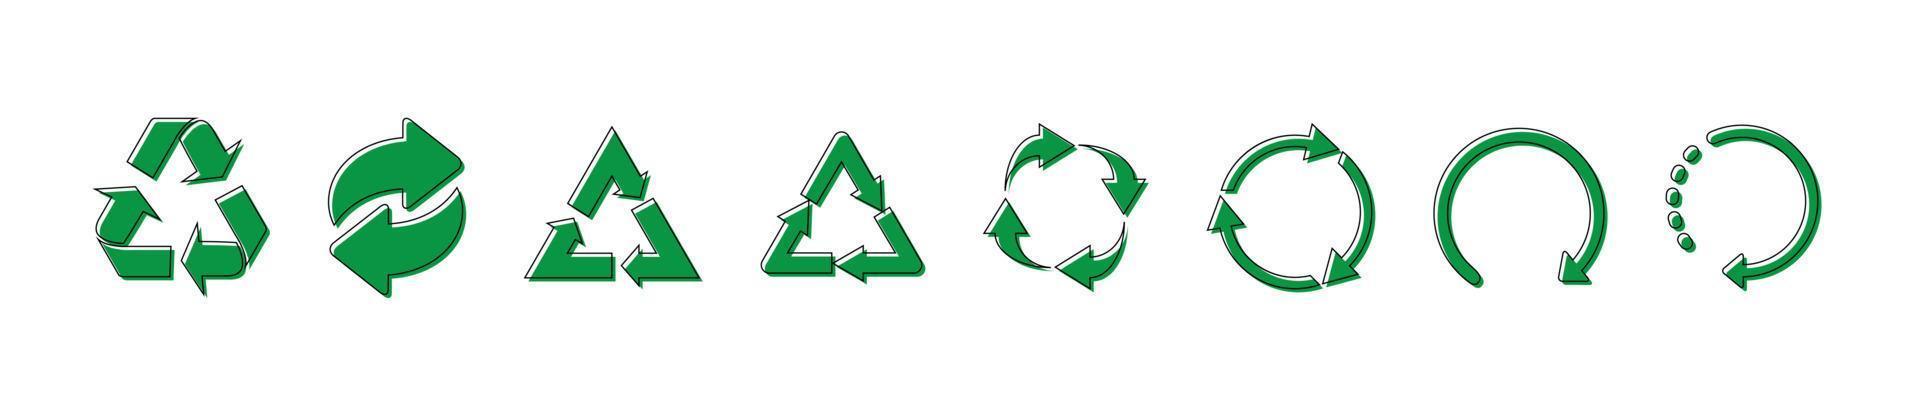 reciclar ícones vetoriais verdes e pretos. reciclar ícones isolados no fundo branco. eps10 vetor